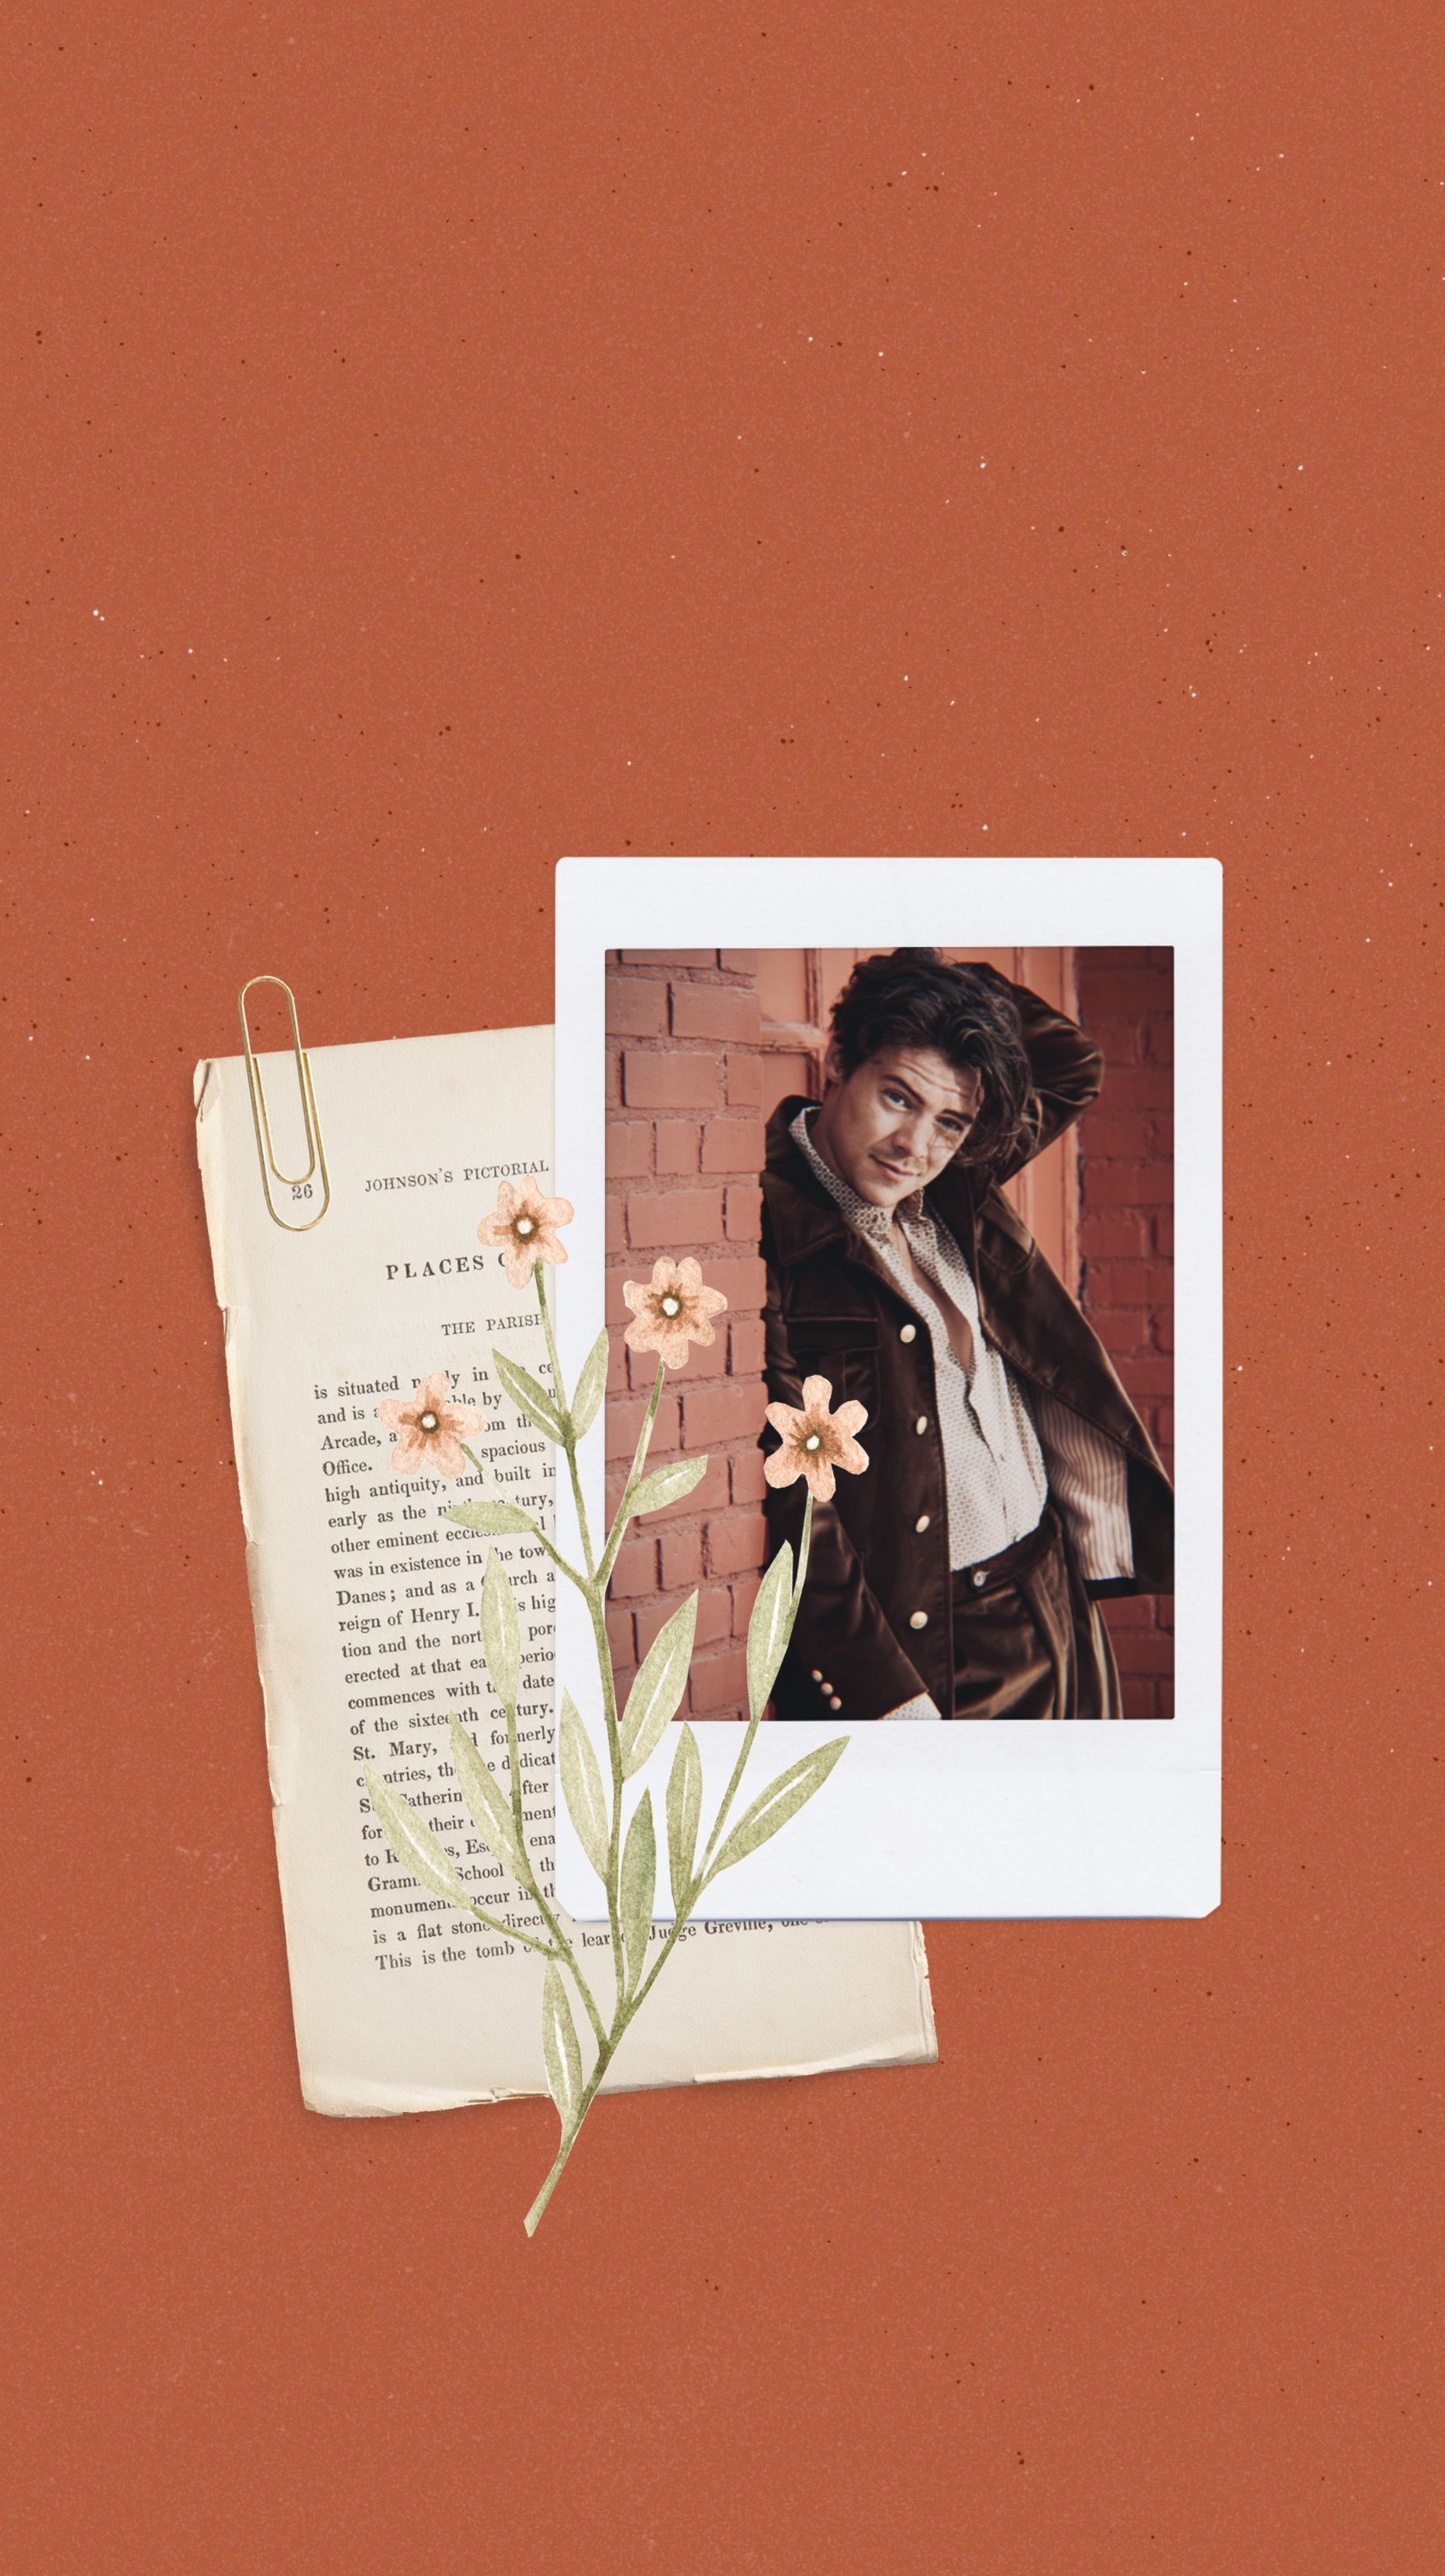 A collage of a man in a suit, a book page, and a flower. - Harry Styles